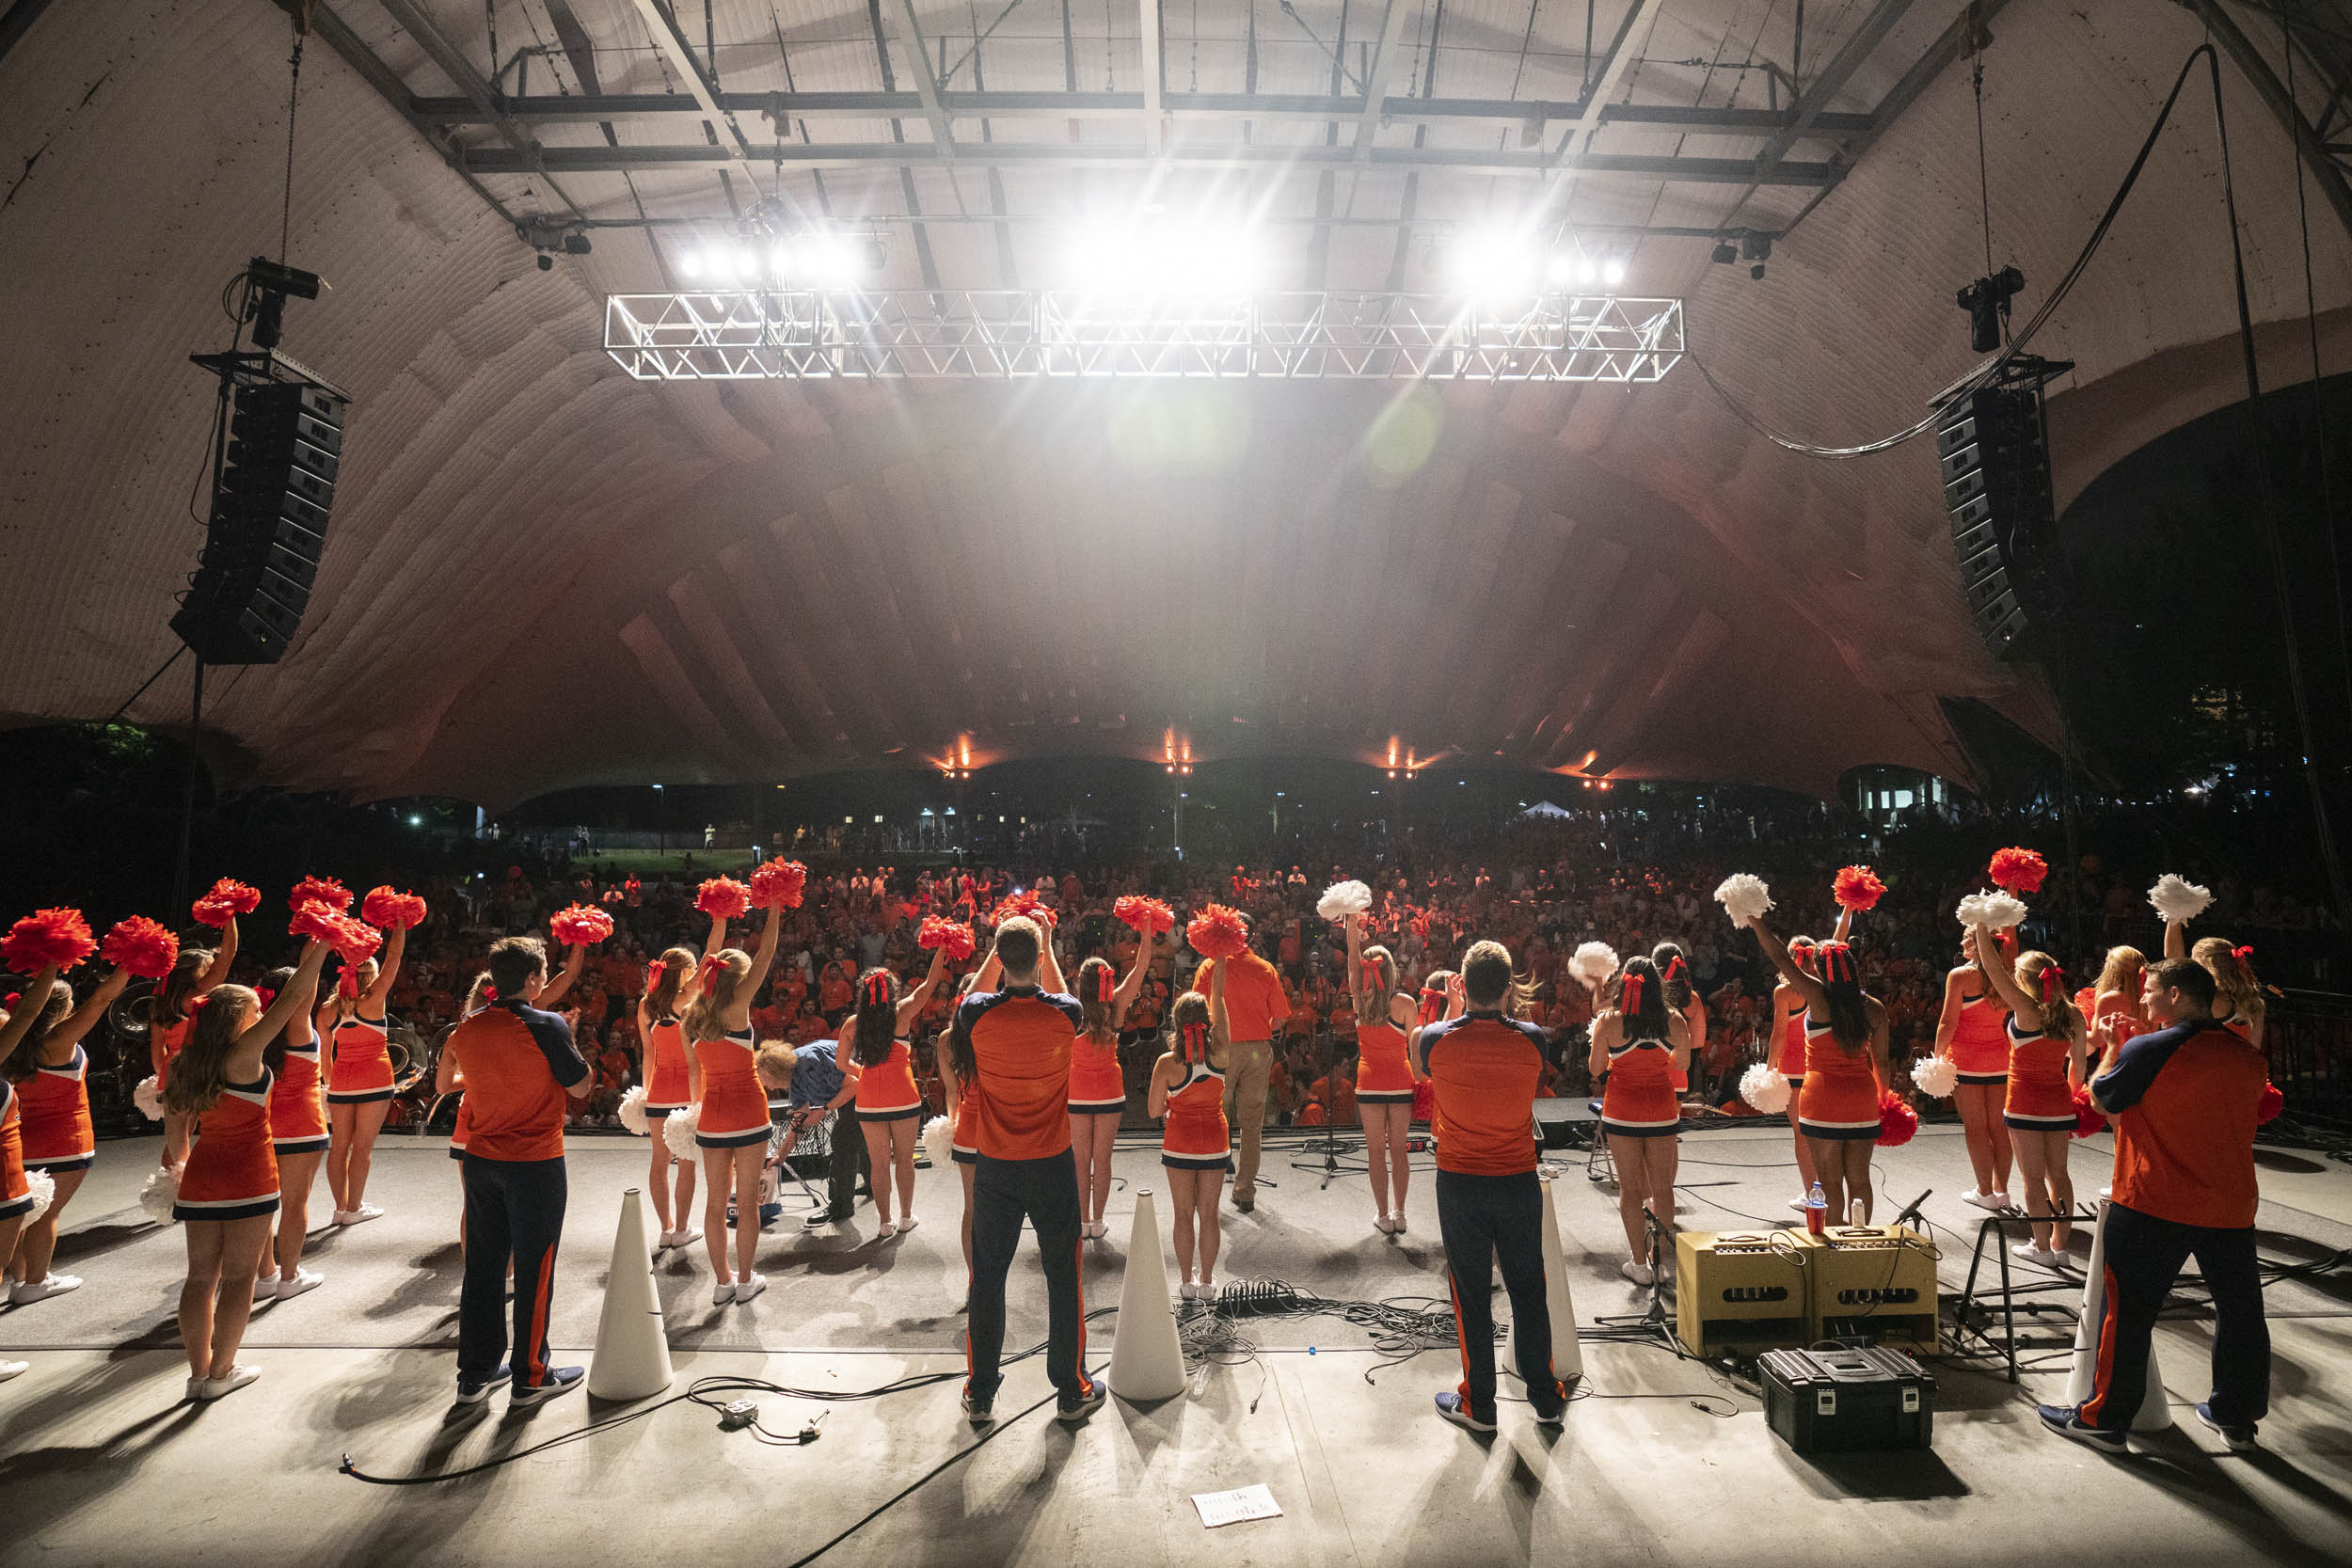 UVA Cheerleaders cheering on the pavilion stage